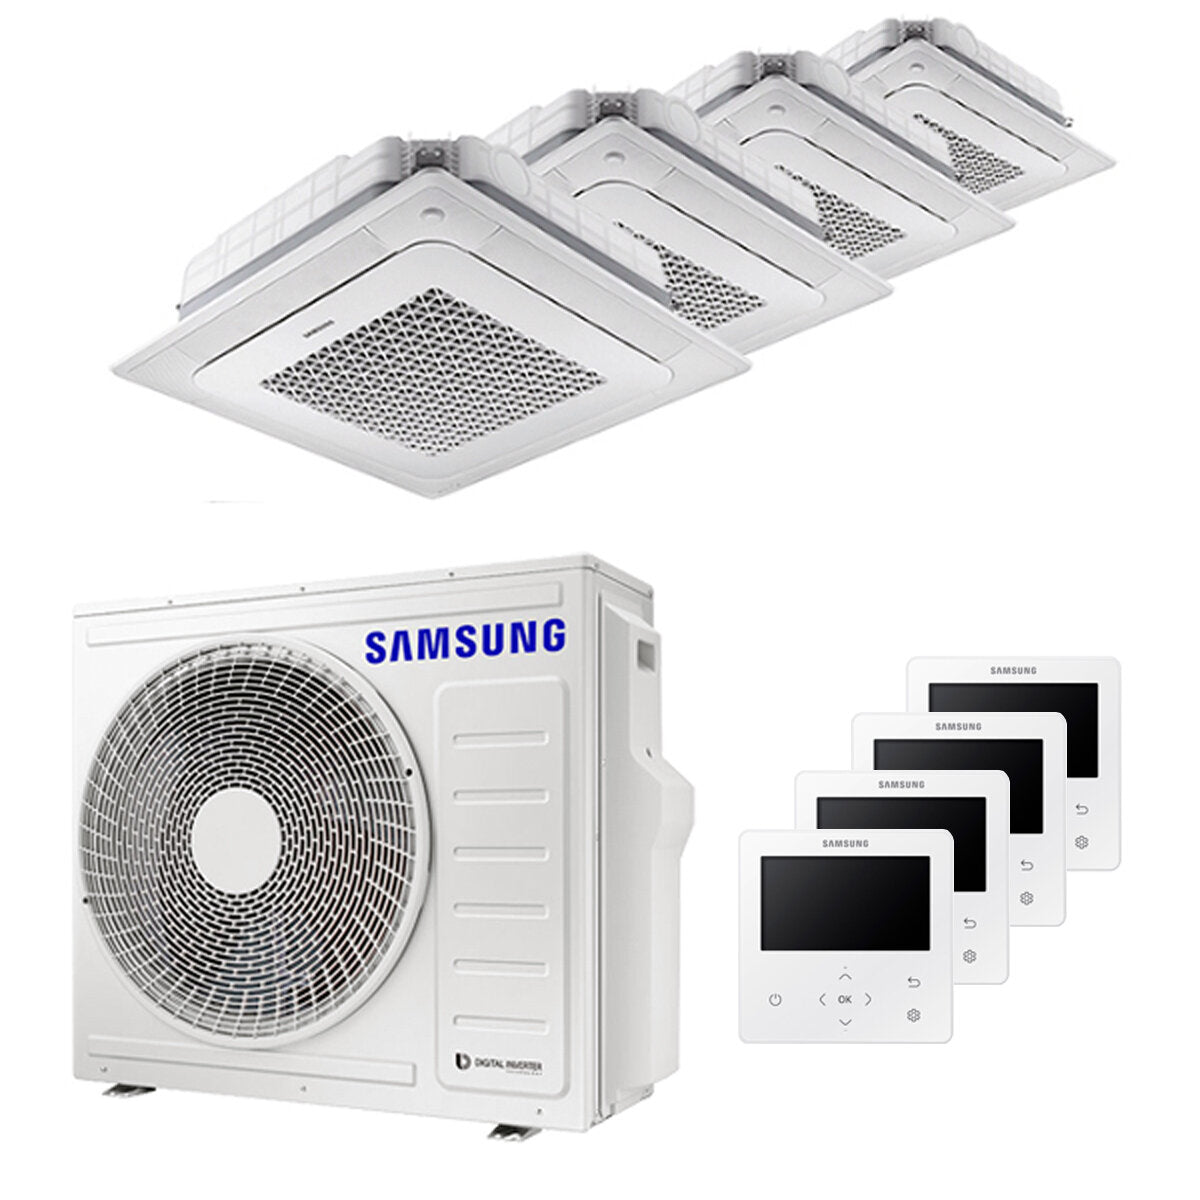 Samsung Climatiseur Windfree 4 voies split carré 7000 + 9000 + 9000 + 9000 BTU inverter A++ unité extérieure 8,0 kW